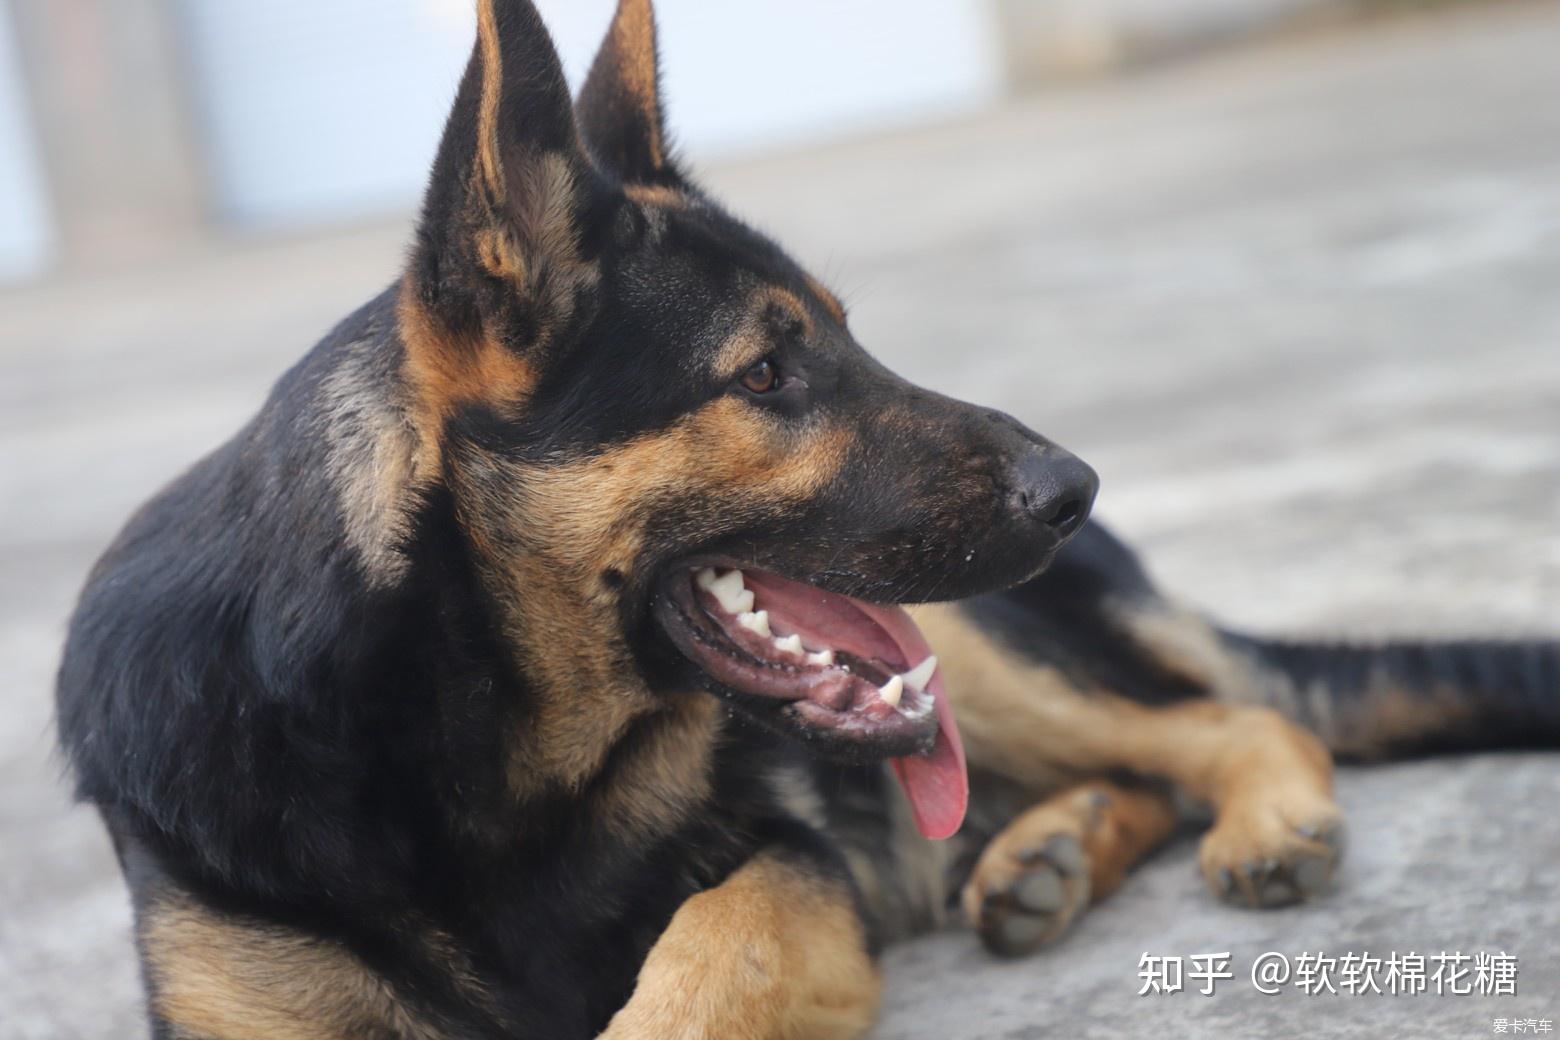 中华国犬 昆明犬 - 综合工作犬交易 - 猛犬俱乐部-中国具有影响力的猛犬网站 - Powered by Discuz!